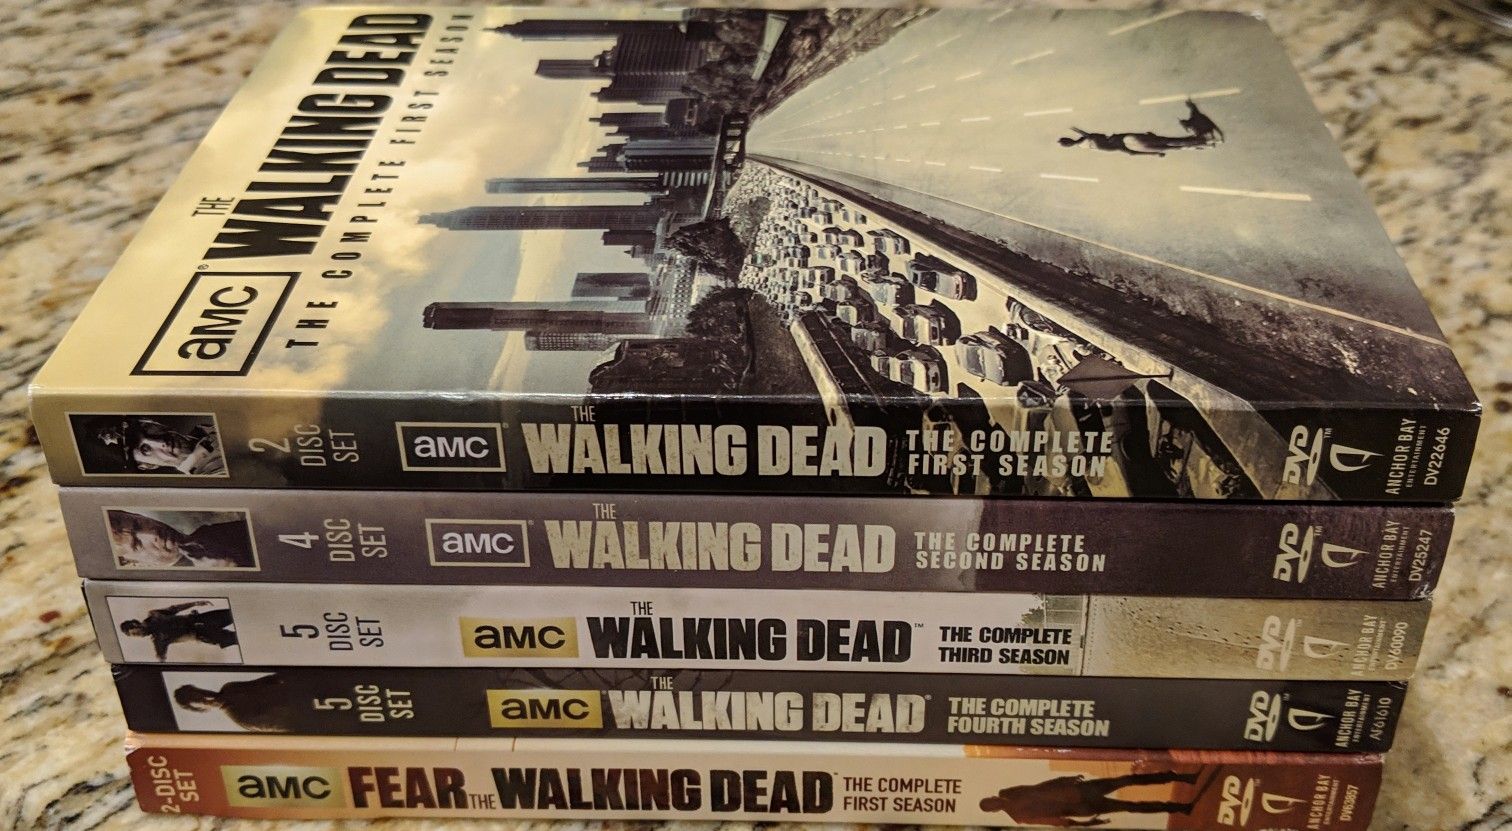 The Walking Dead Seasons 1-4/Fear The Walking Dead Season 1 DVD Set